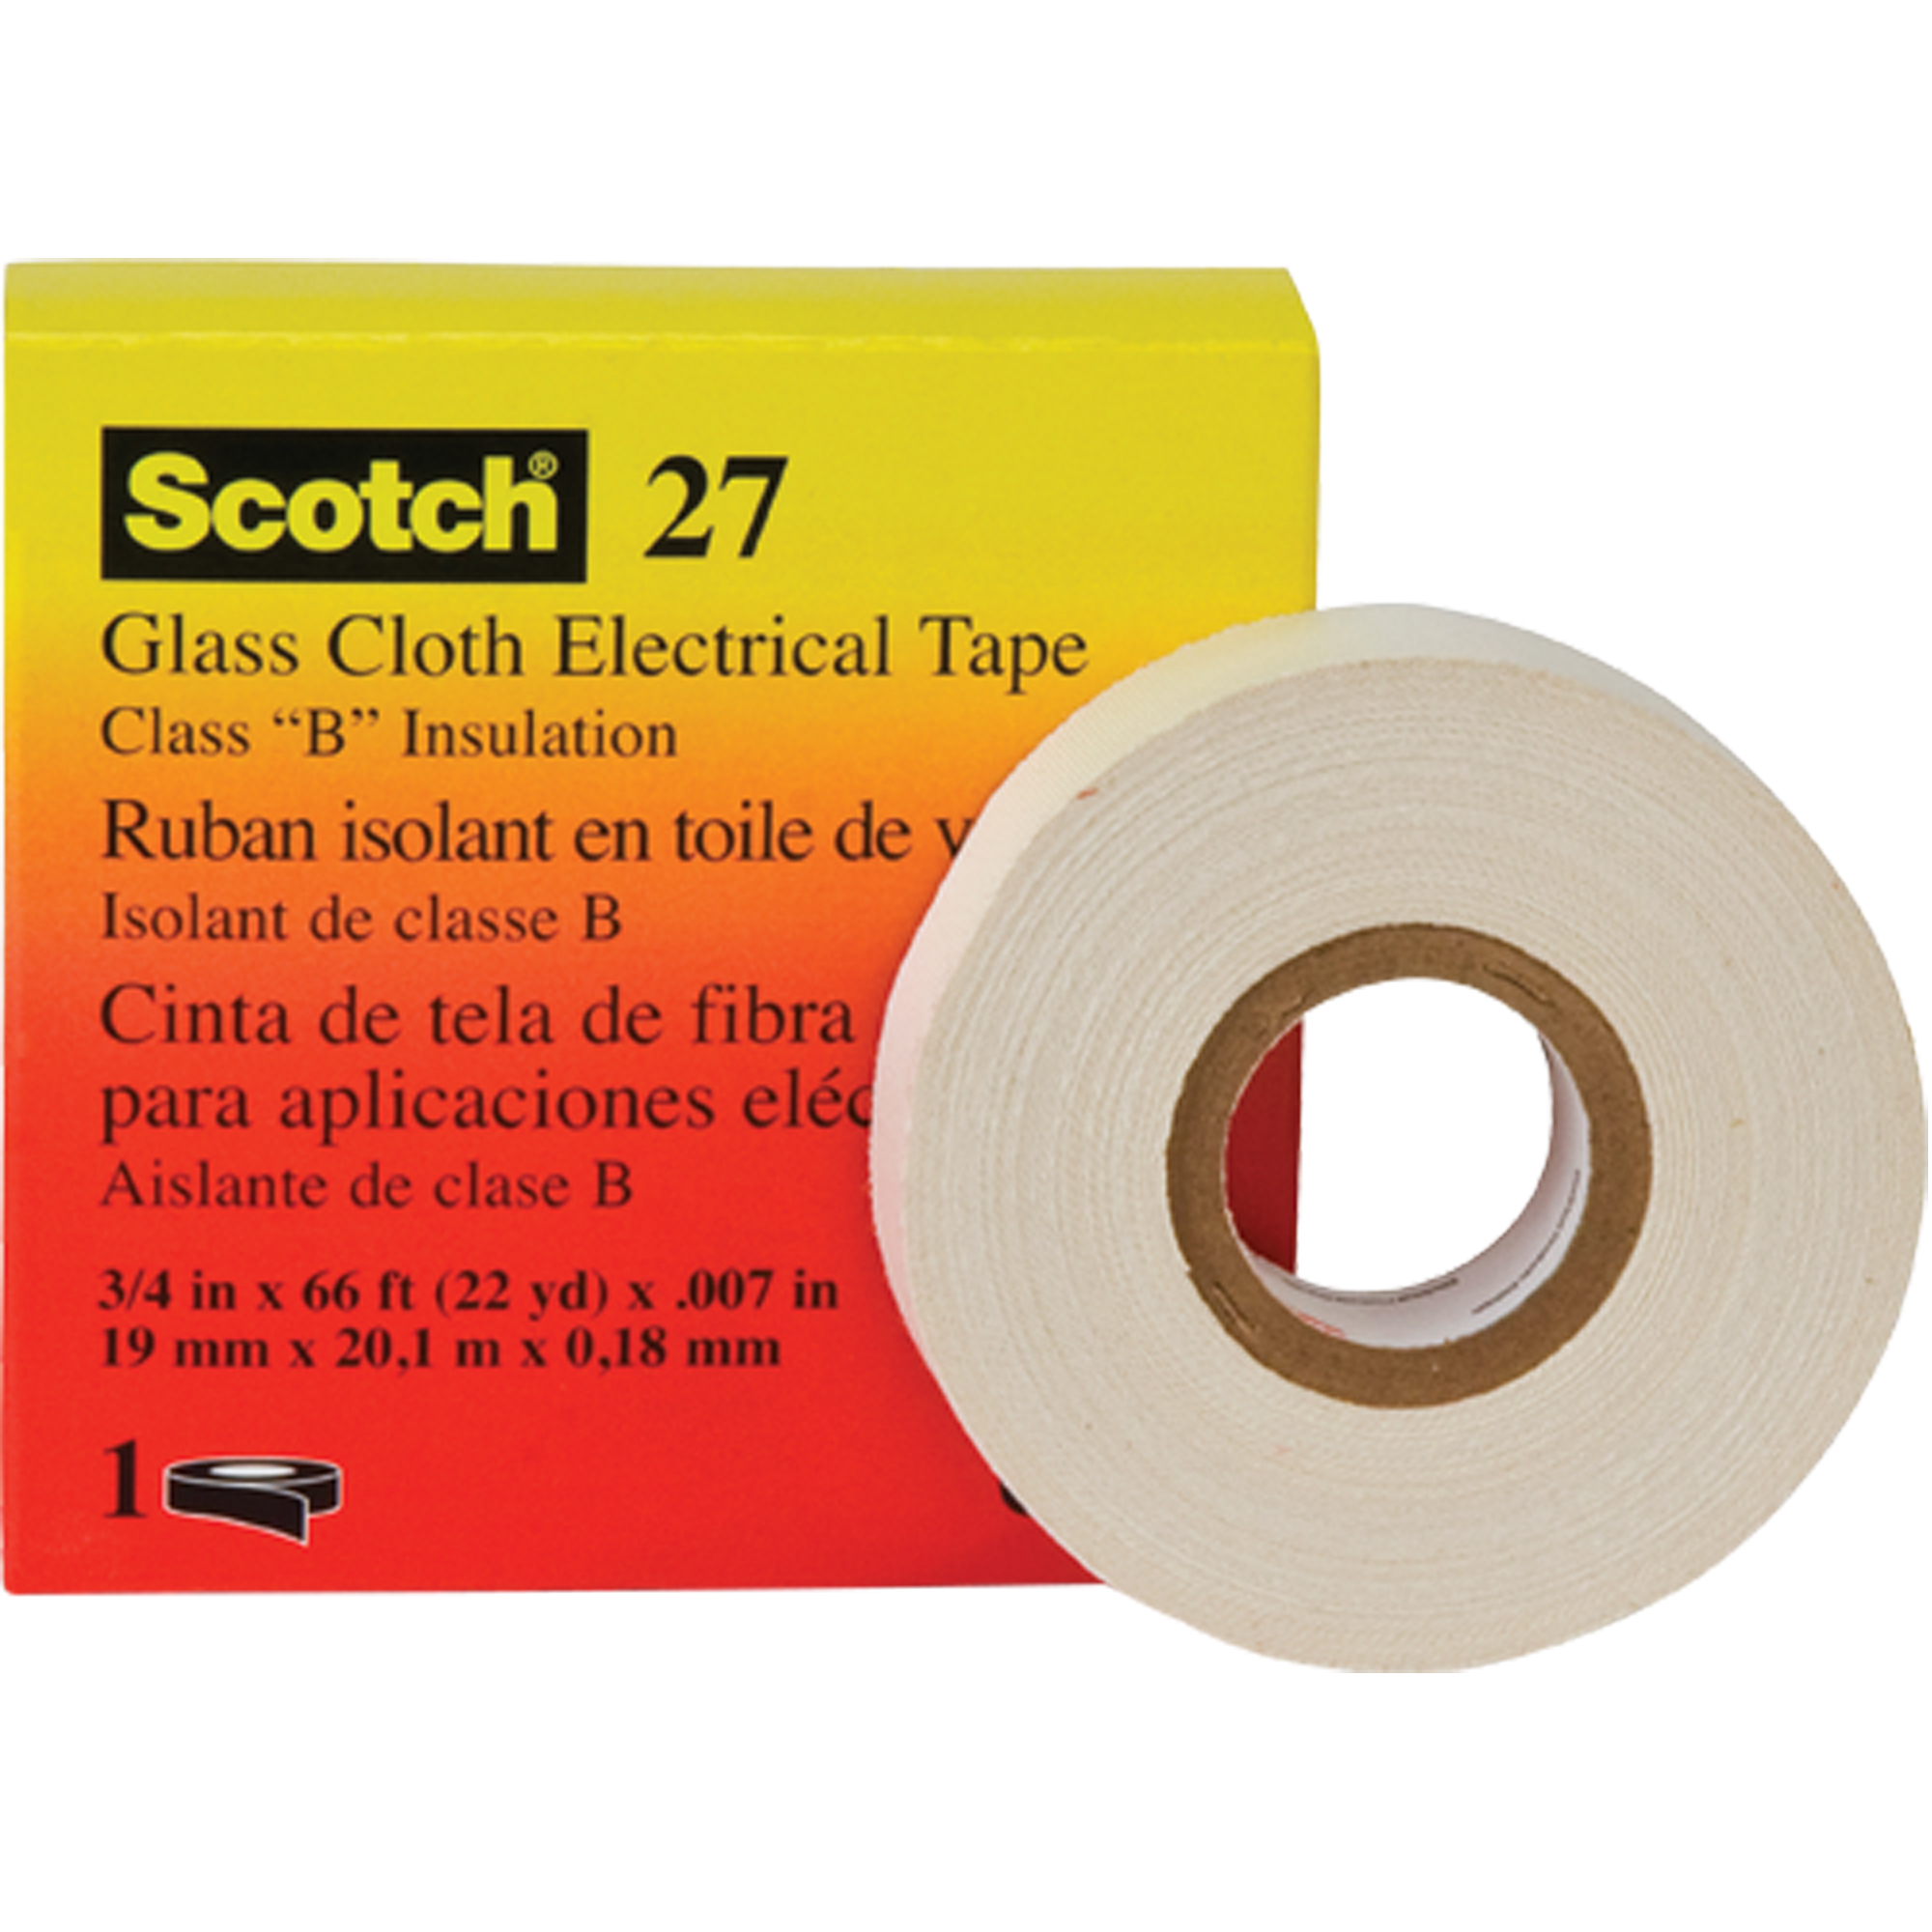 3M Scotch® 27 Glass Cloth Electrical Tape, 19 mm (3/4